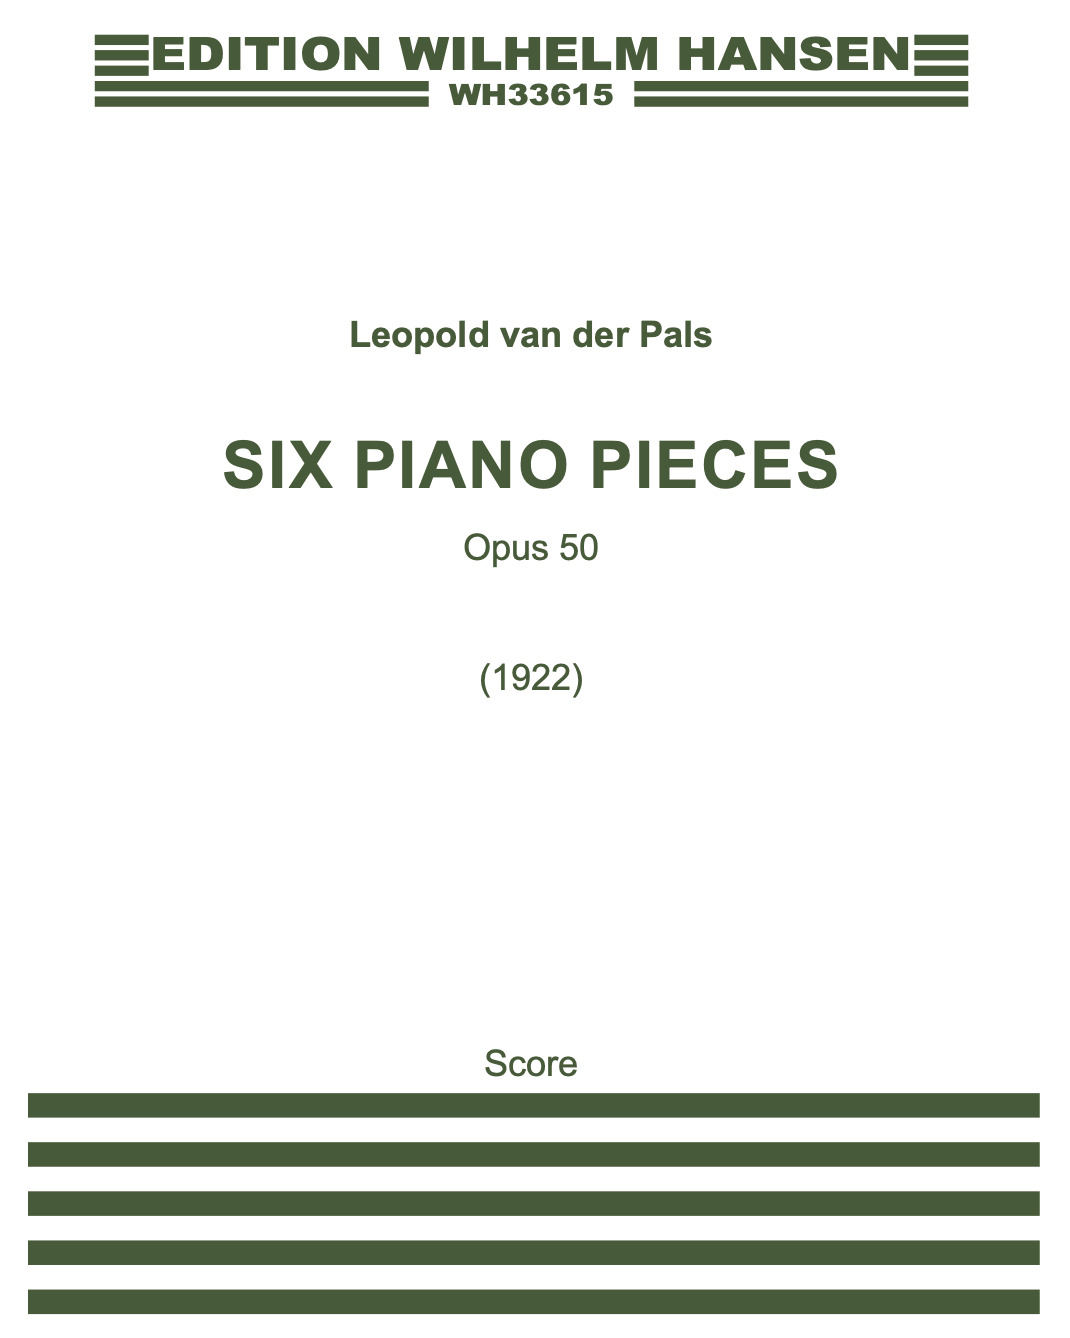 6 Piano Pieces